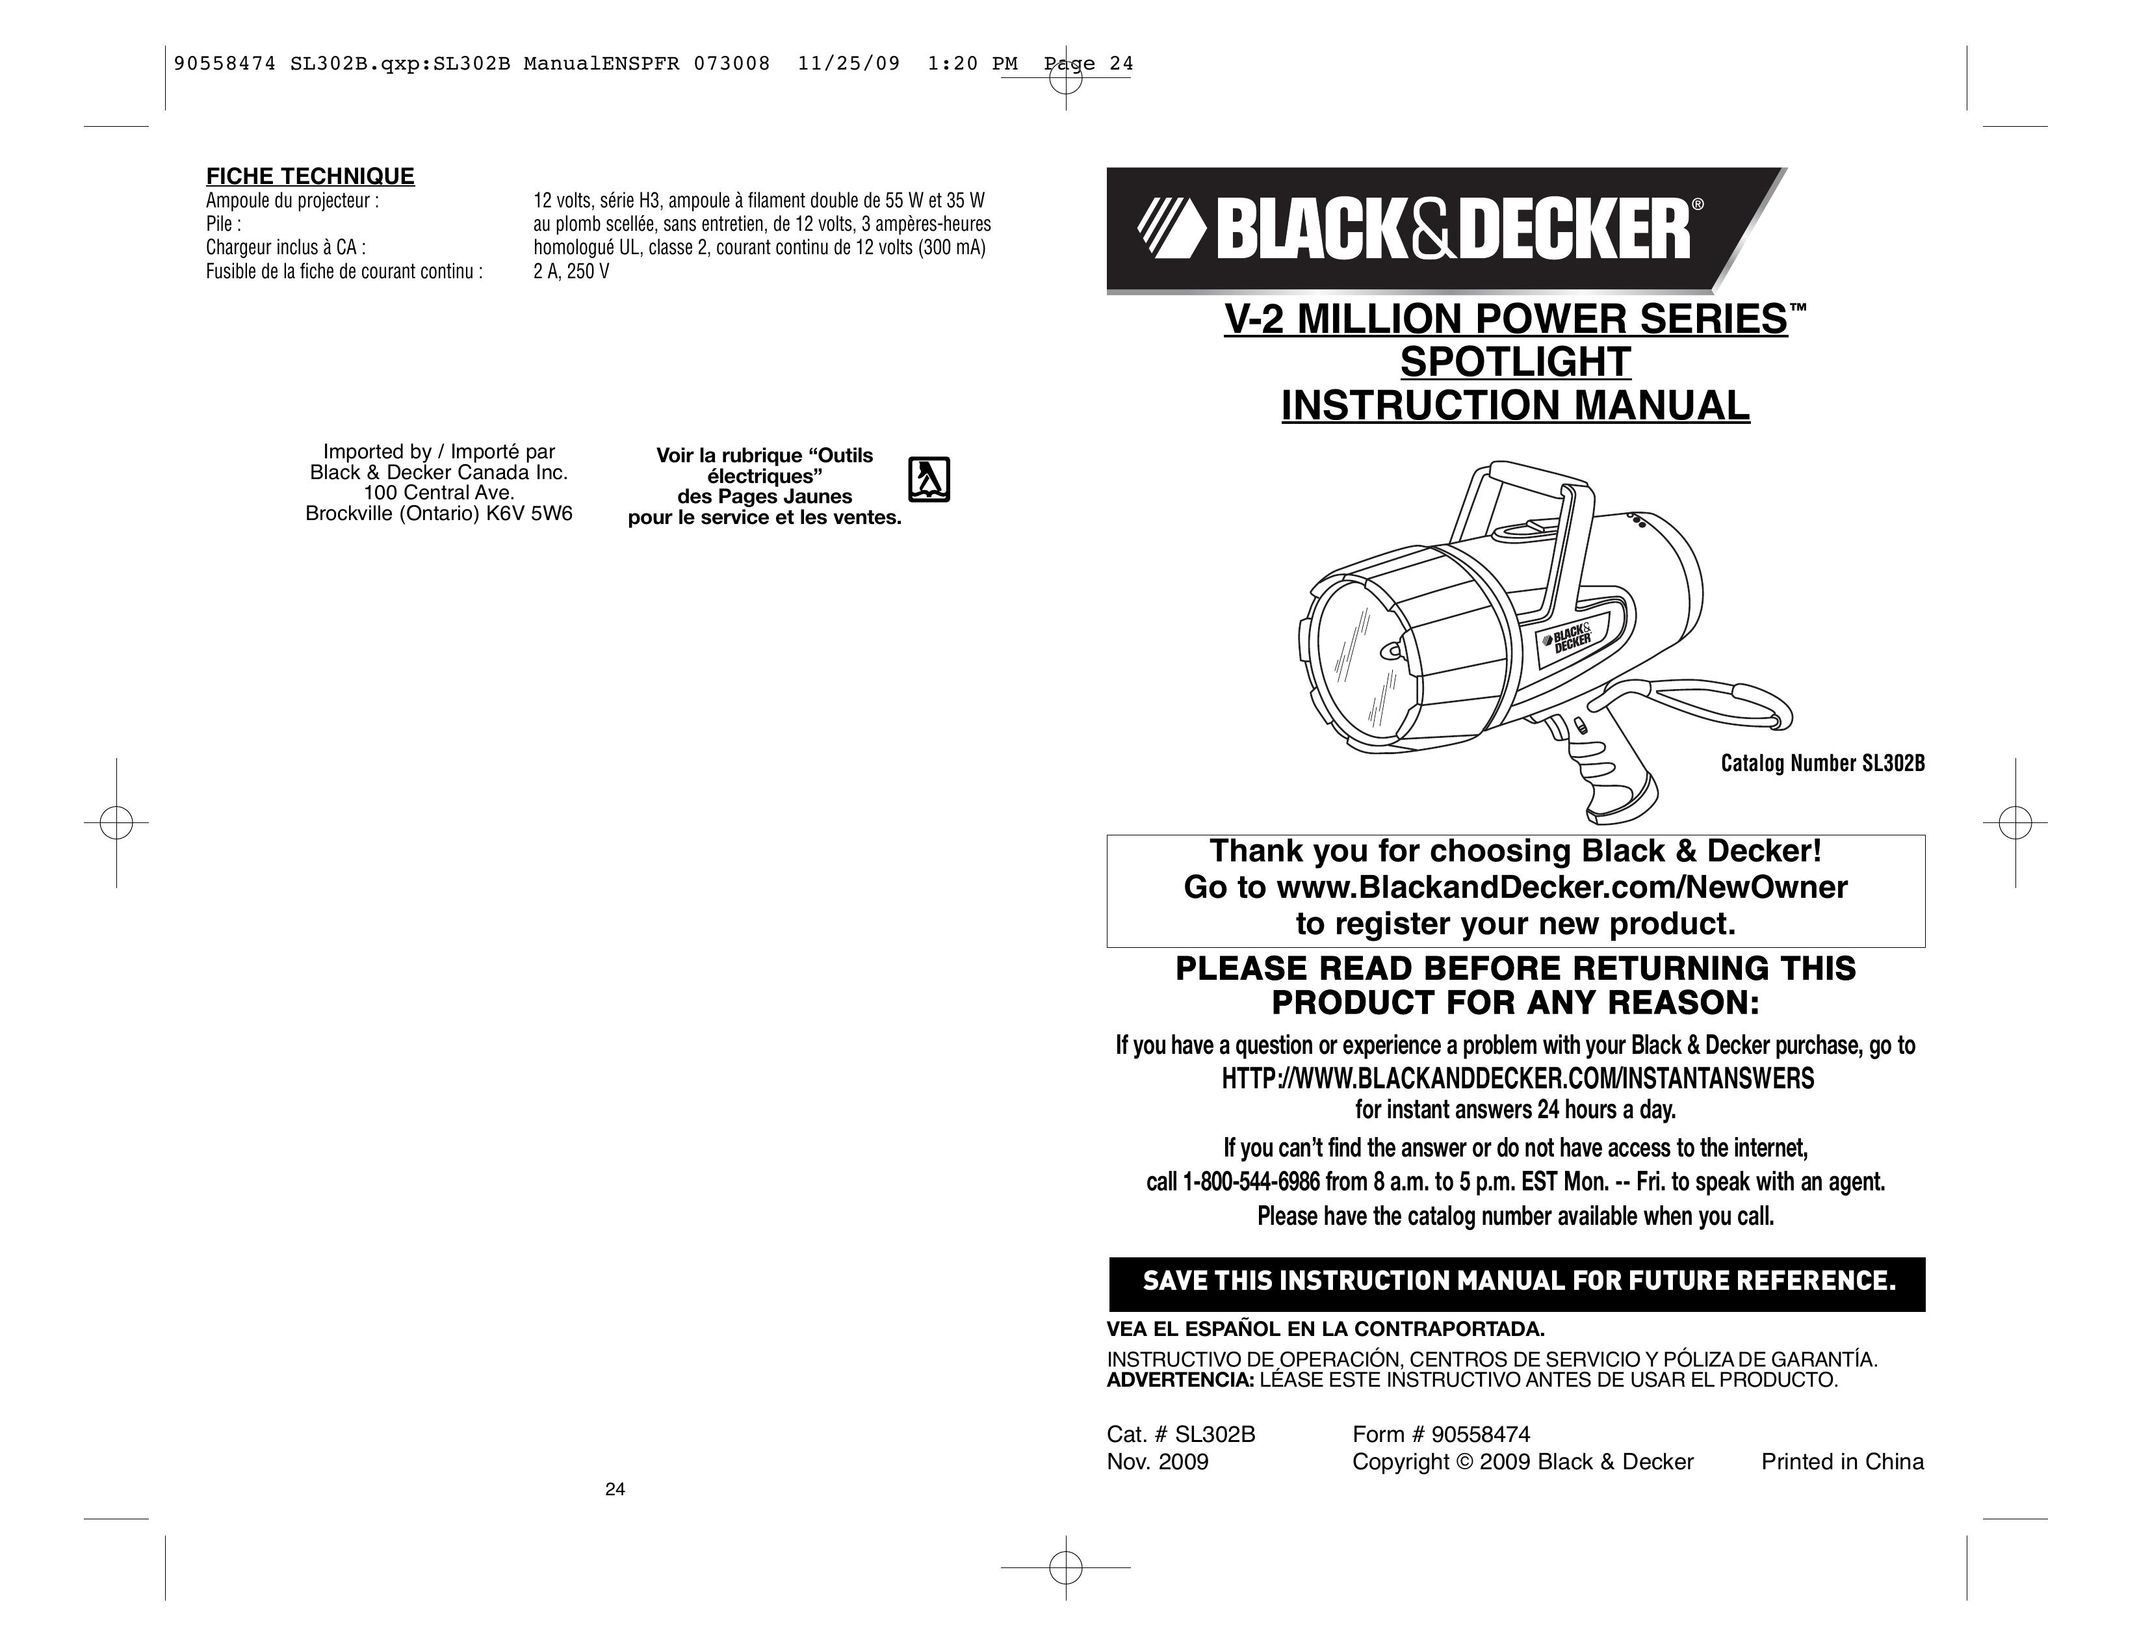 Black & Decker V-2 Million Work Light User Manual